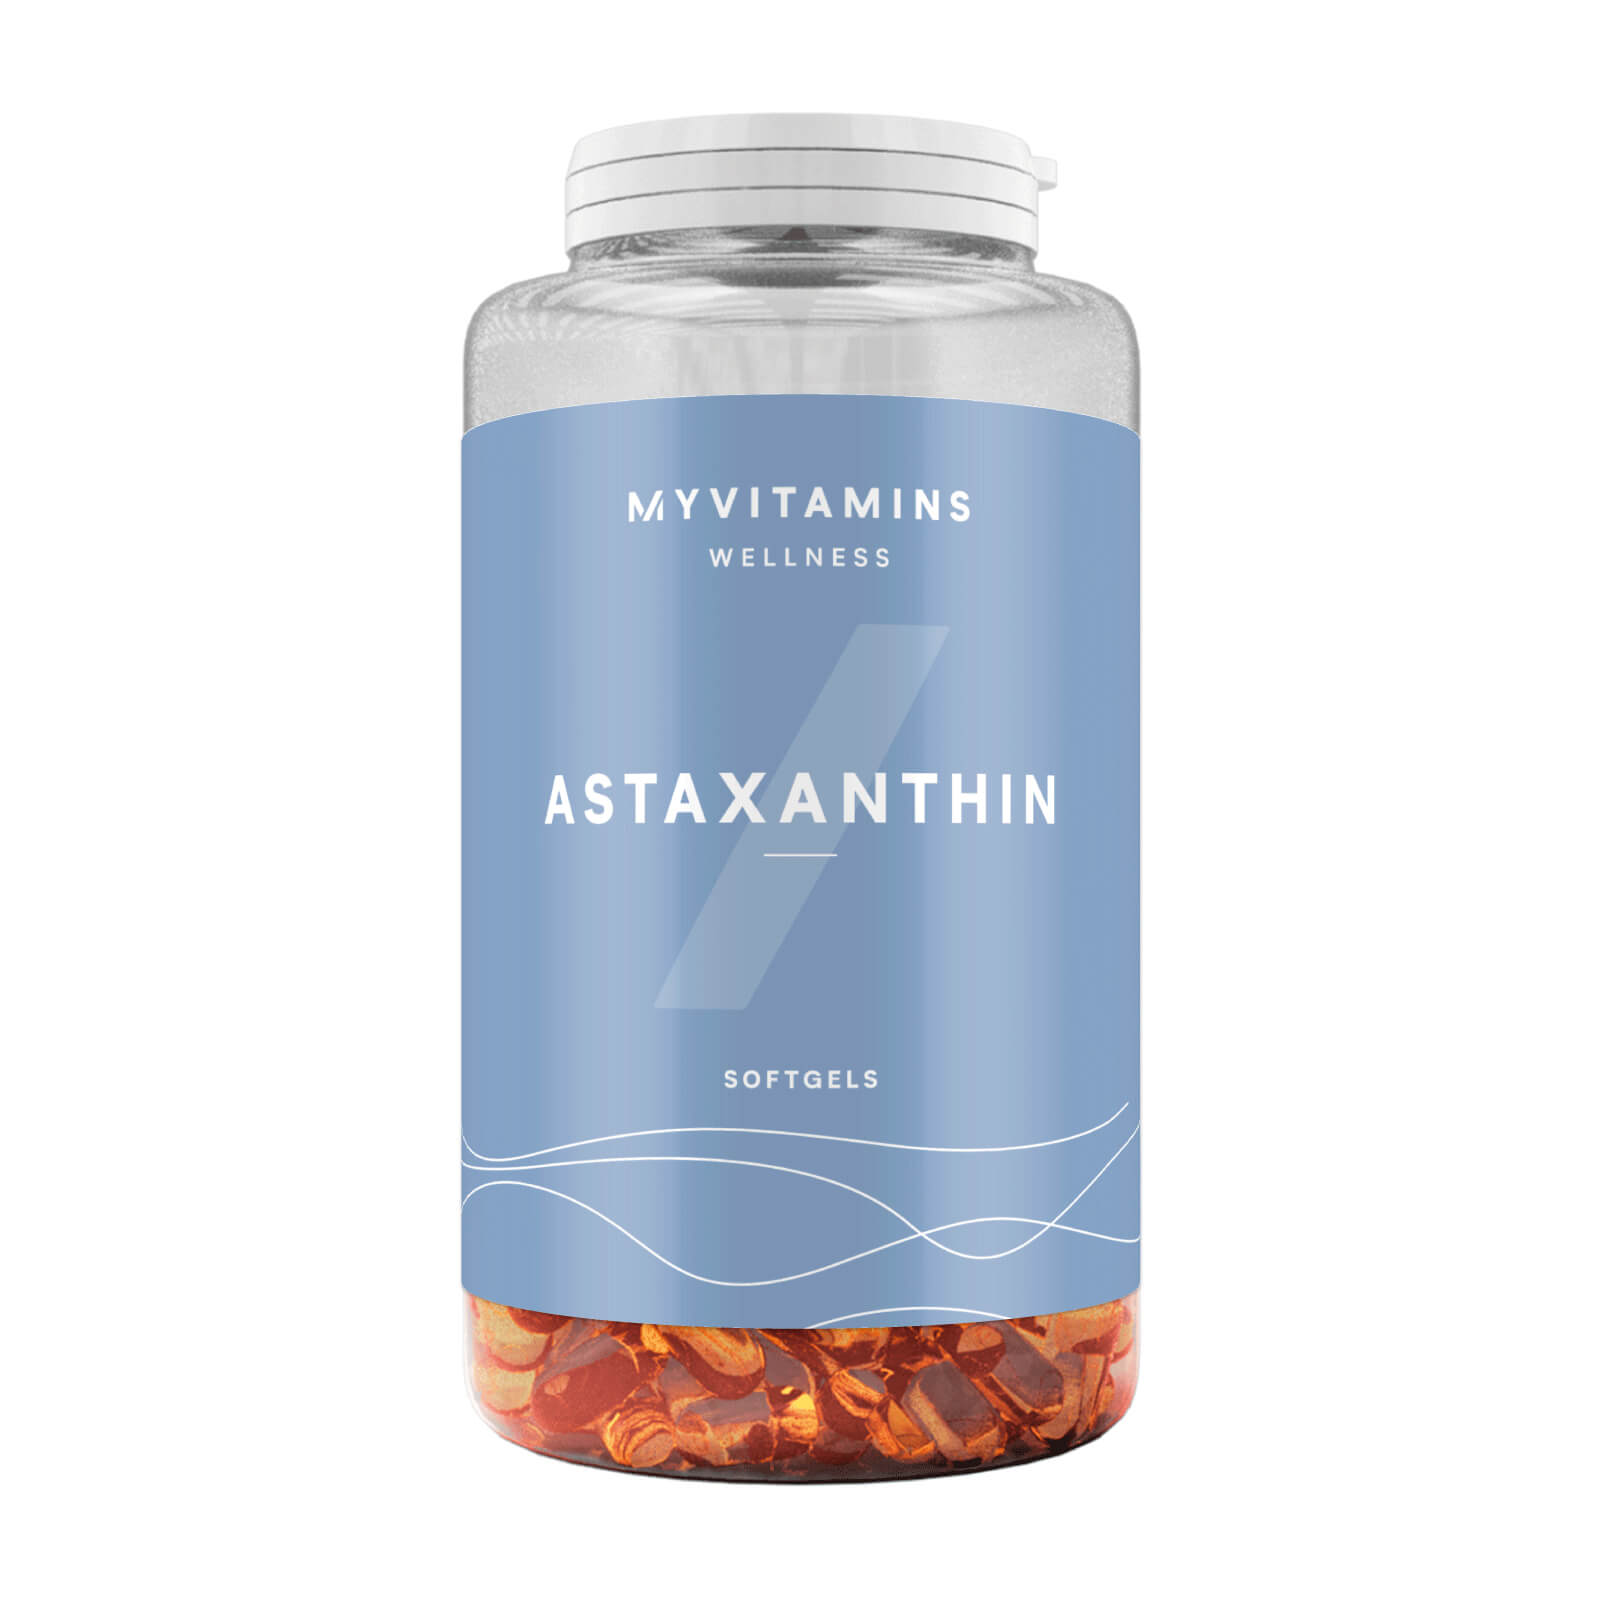 Myvitamins Astaxanthin Softgel - 60Kapseln